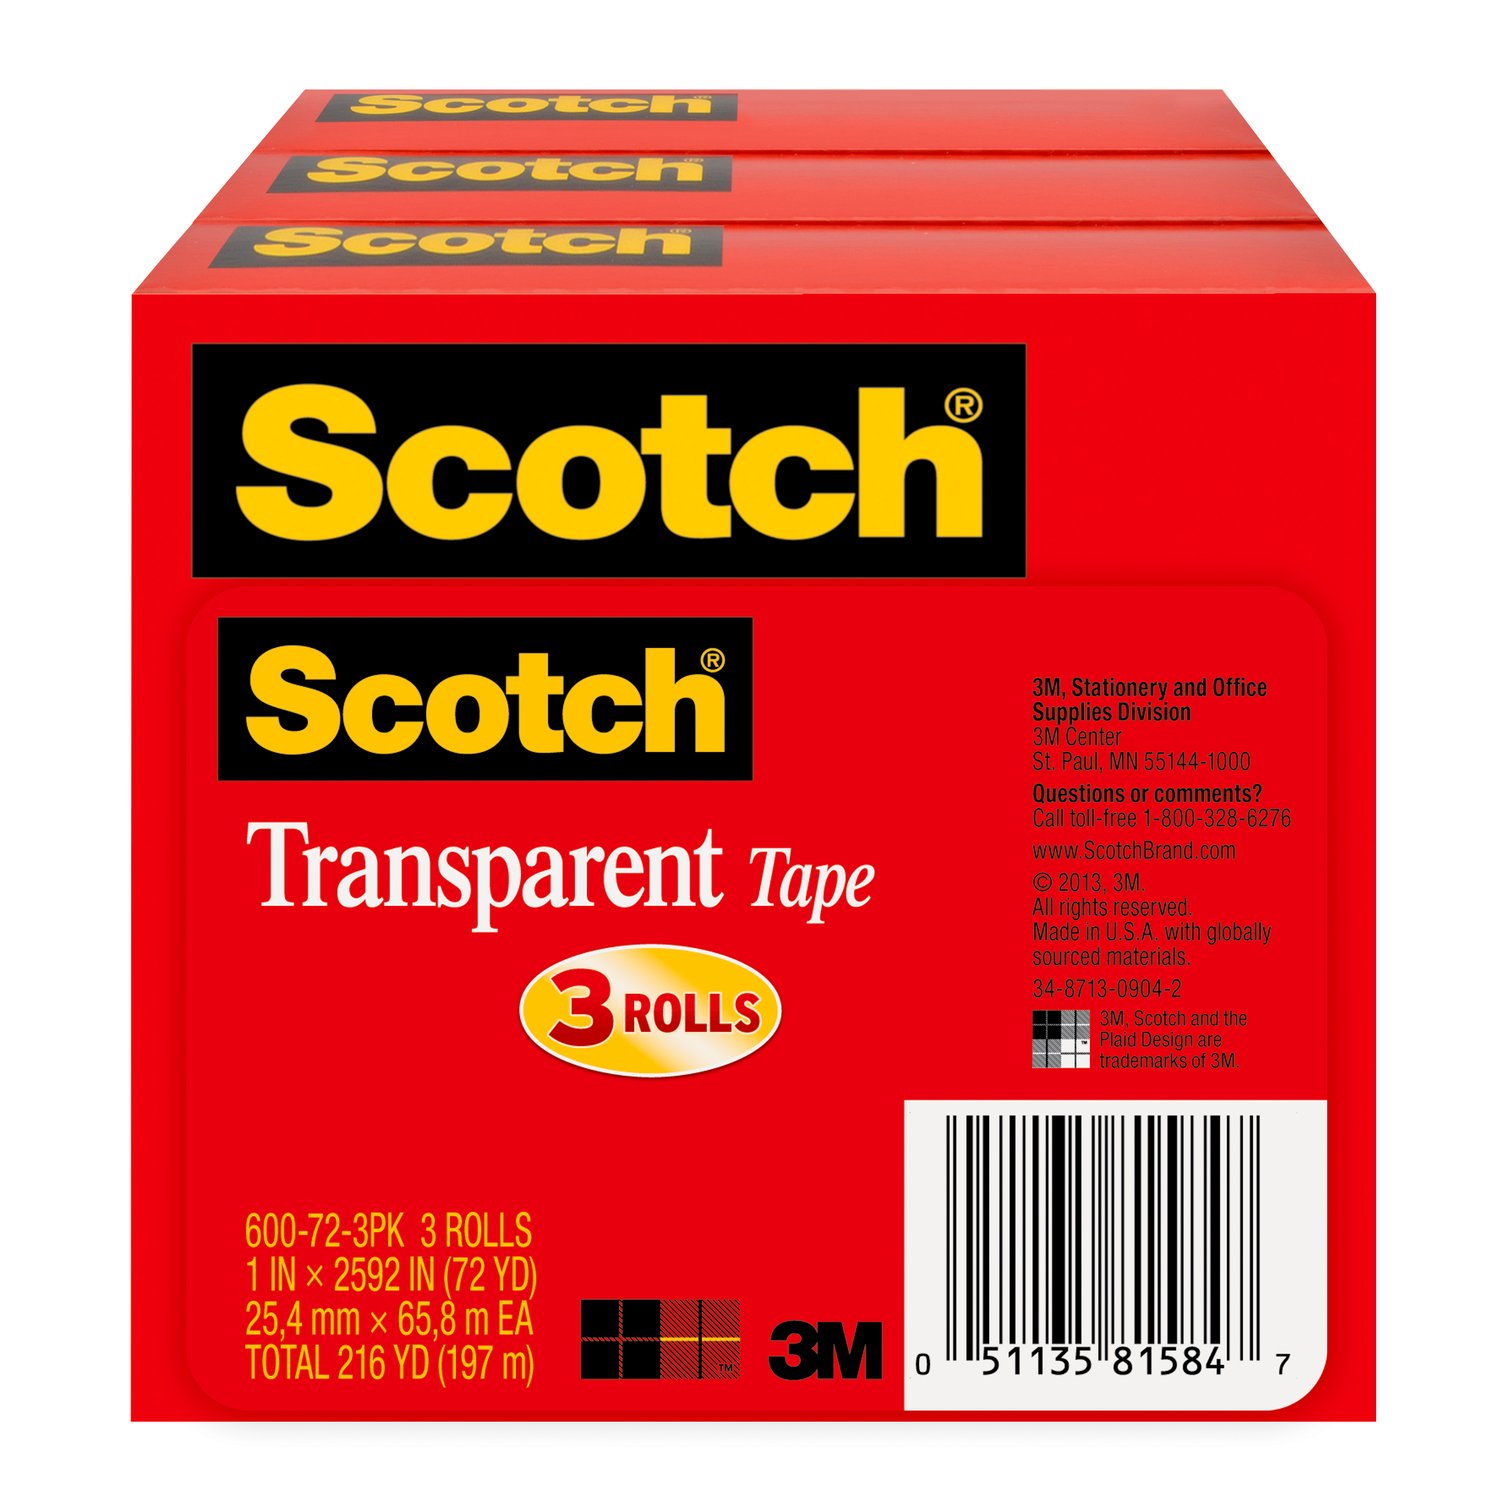 7010332683 - Scotch Transparent Tape 600-72-3PK, 1 in x 2592 in (25,4 mm x 65,8) 3PK